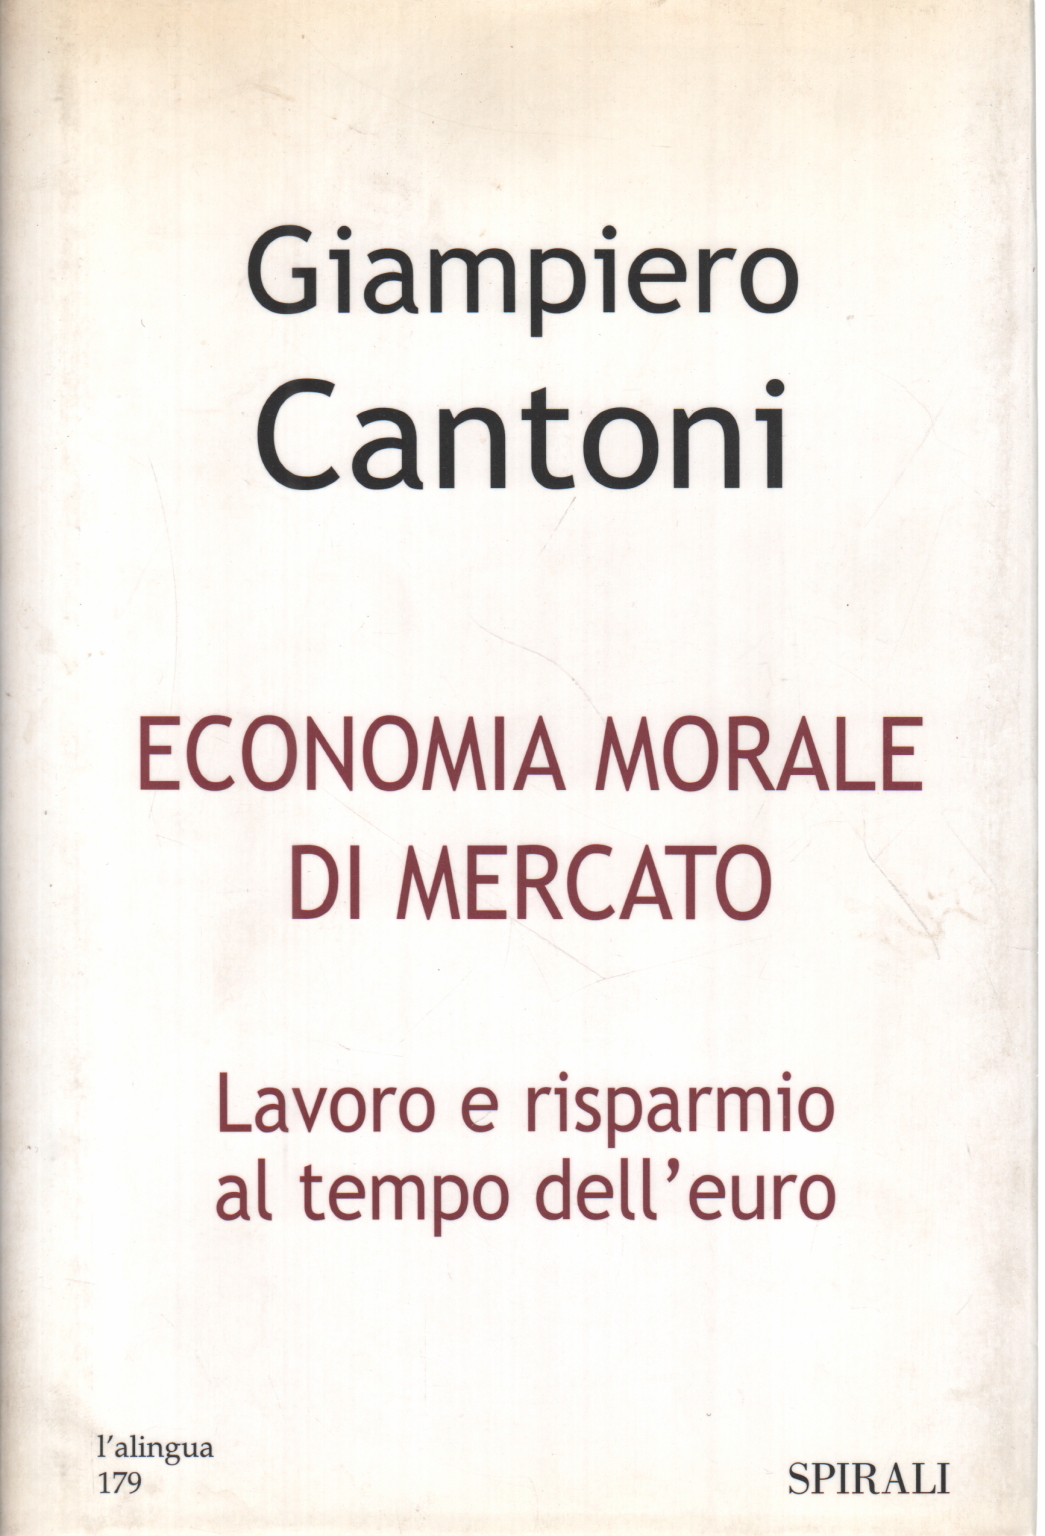 Moral economy of the market, Giampiero Cantoni